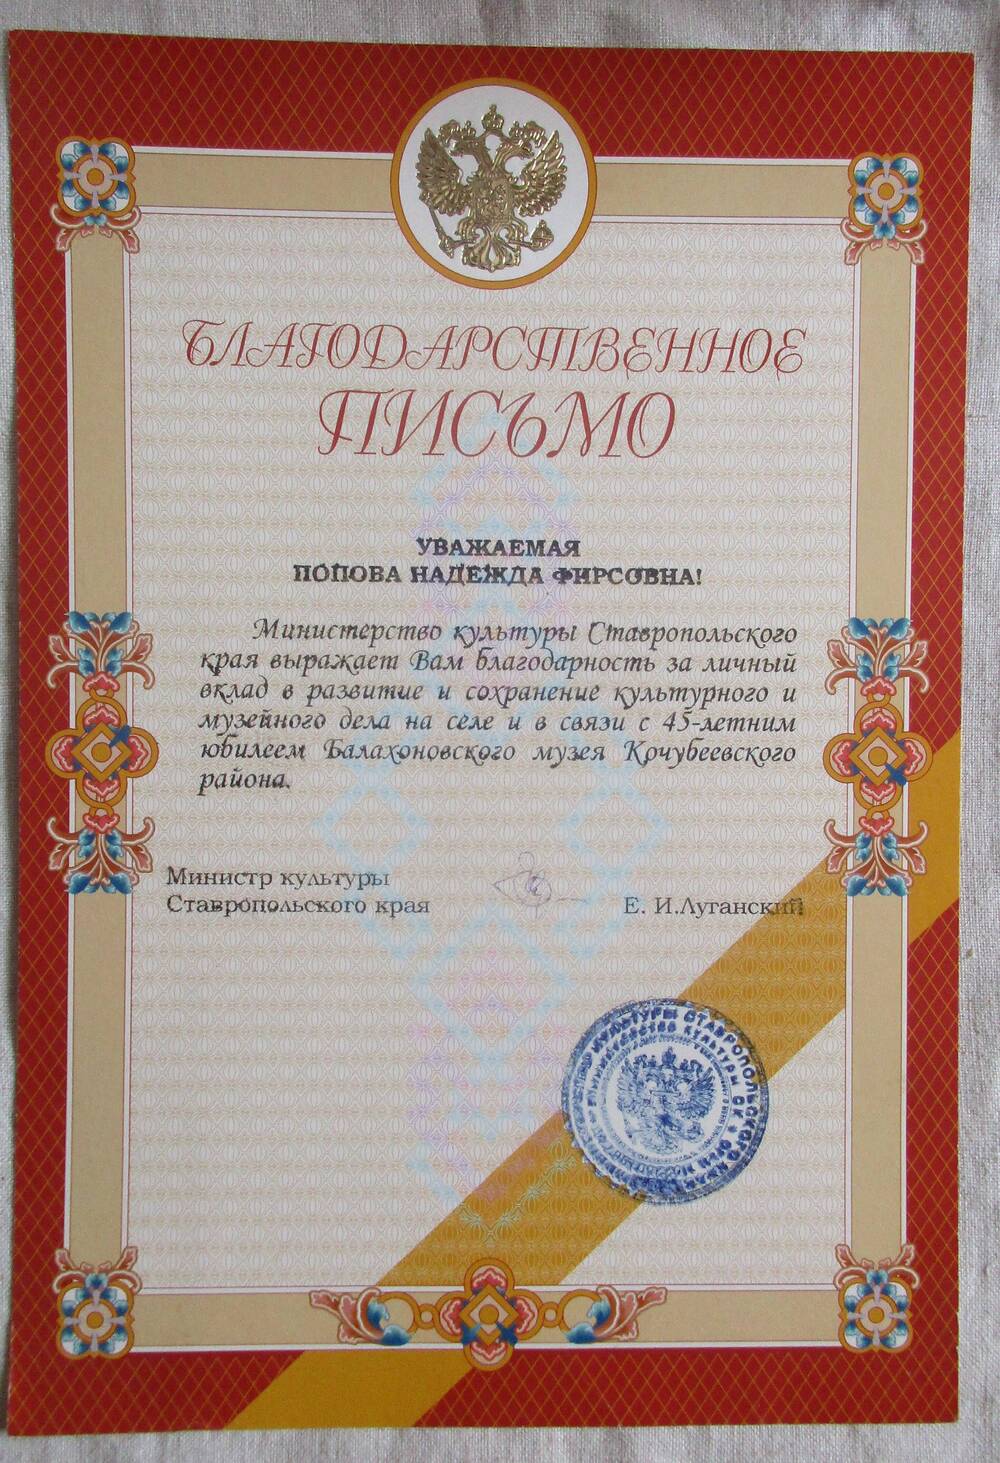 Благодарственное письмо от Министерства культуры Ставропольского края Н.Ф.Поповой